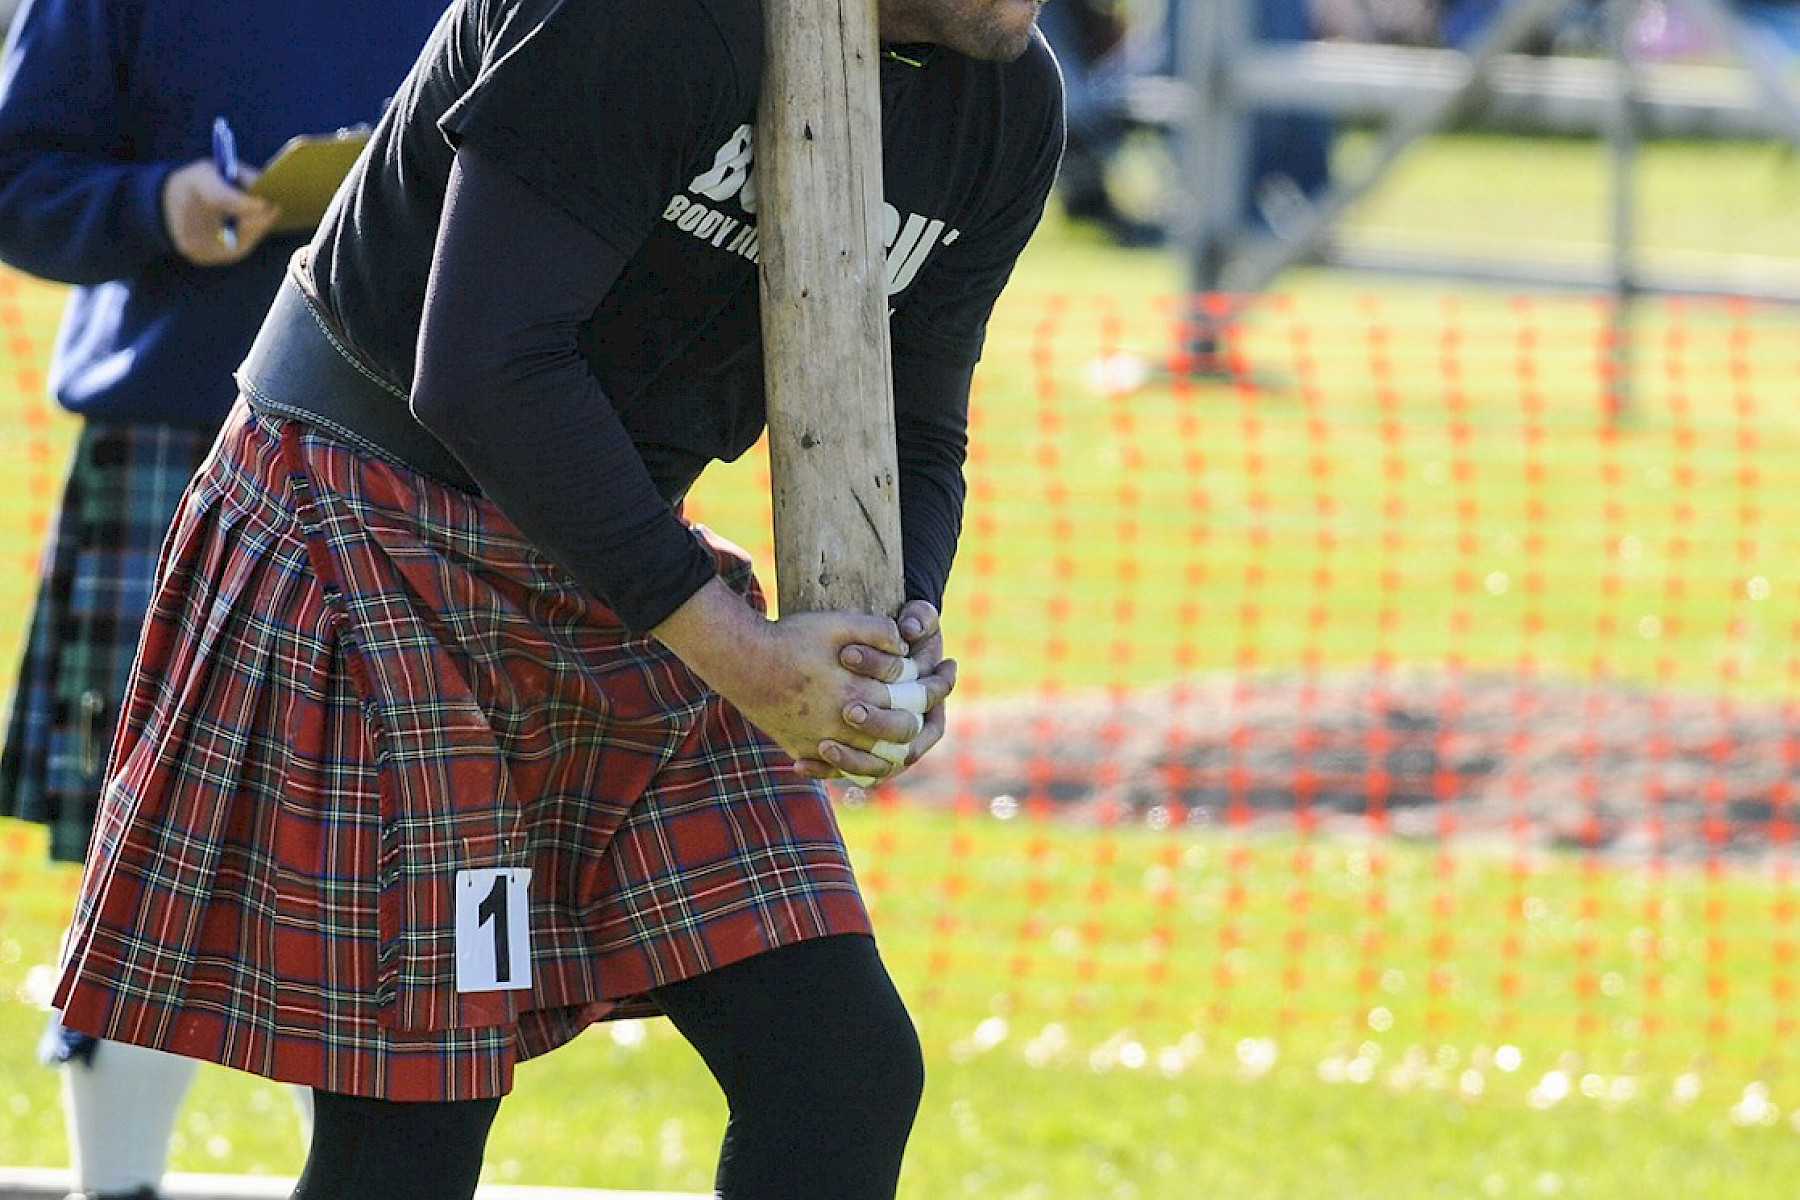 Dornoch image: Highland Games contestant prepares to toss the caber